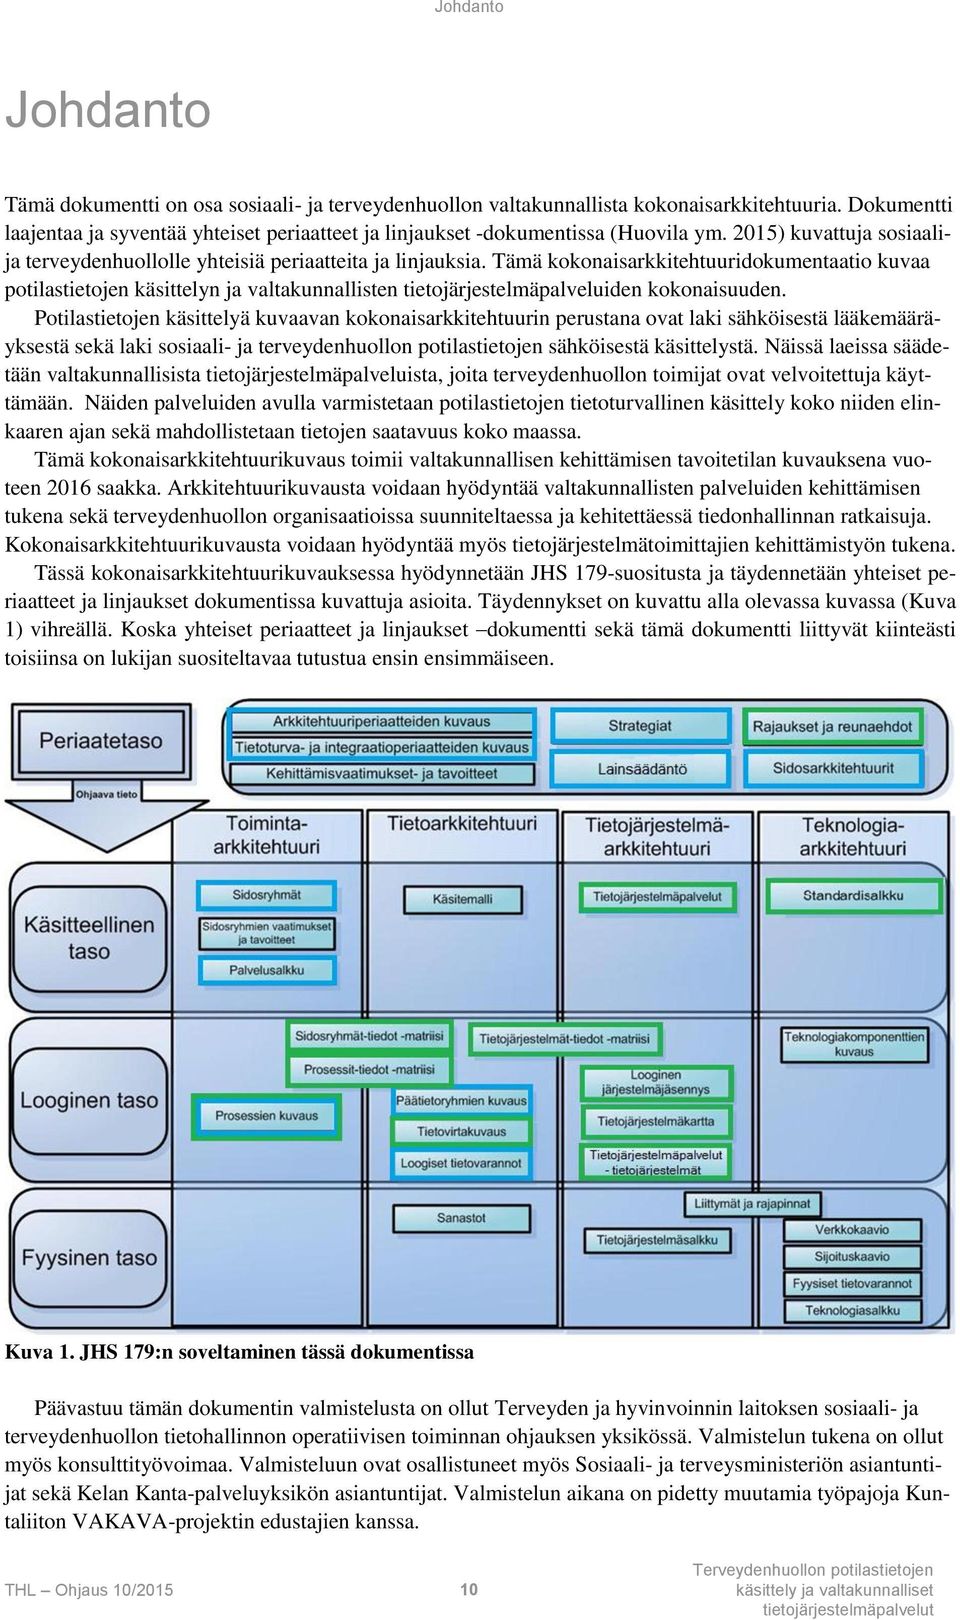 Tämä kokonaisarkkitehtuuridokumentaatio kuvaa potilastietojen käsittelyn ja valtakunnallisten tietojärjestelmäpalveluiden kokonaisuuden.